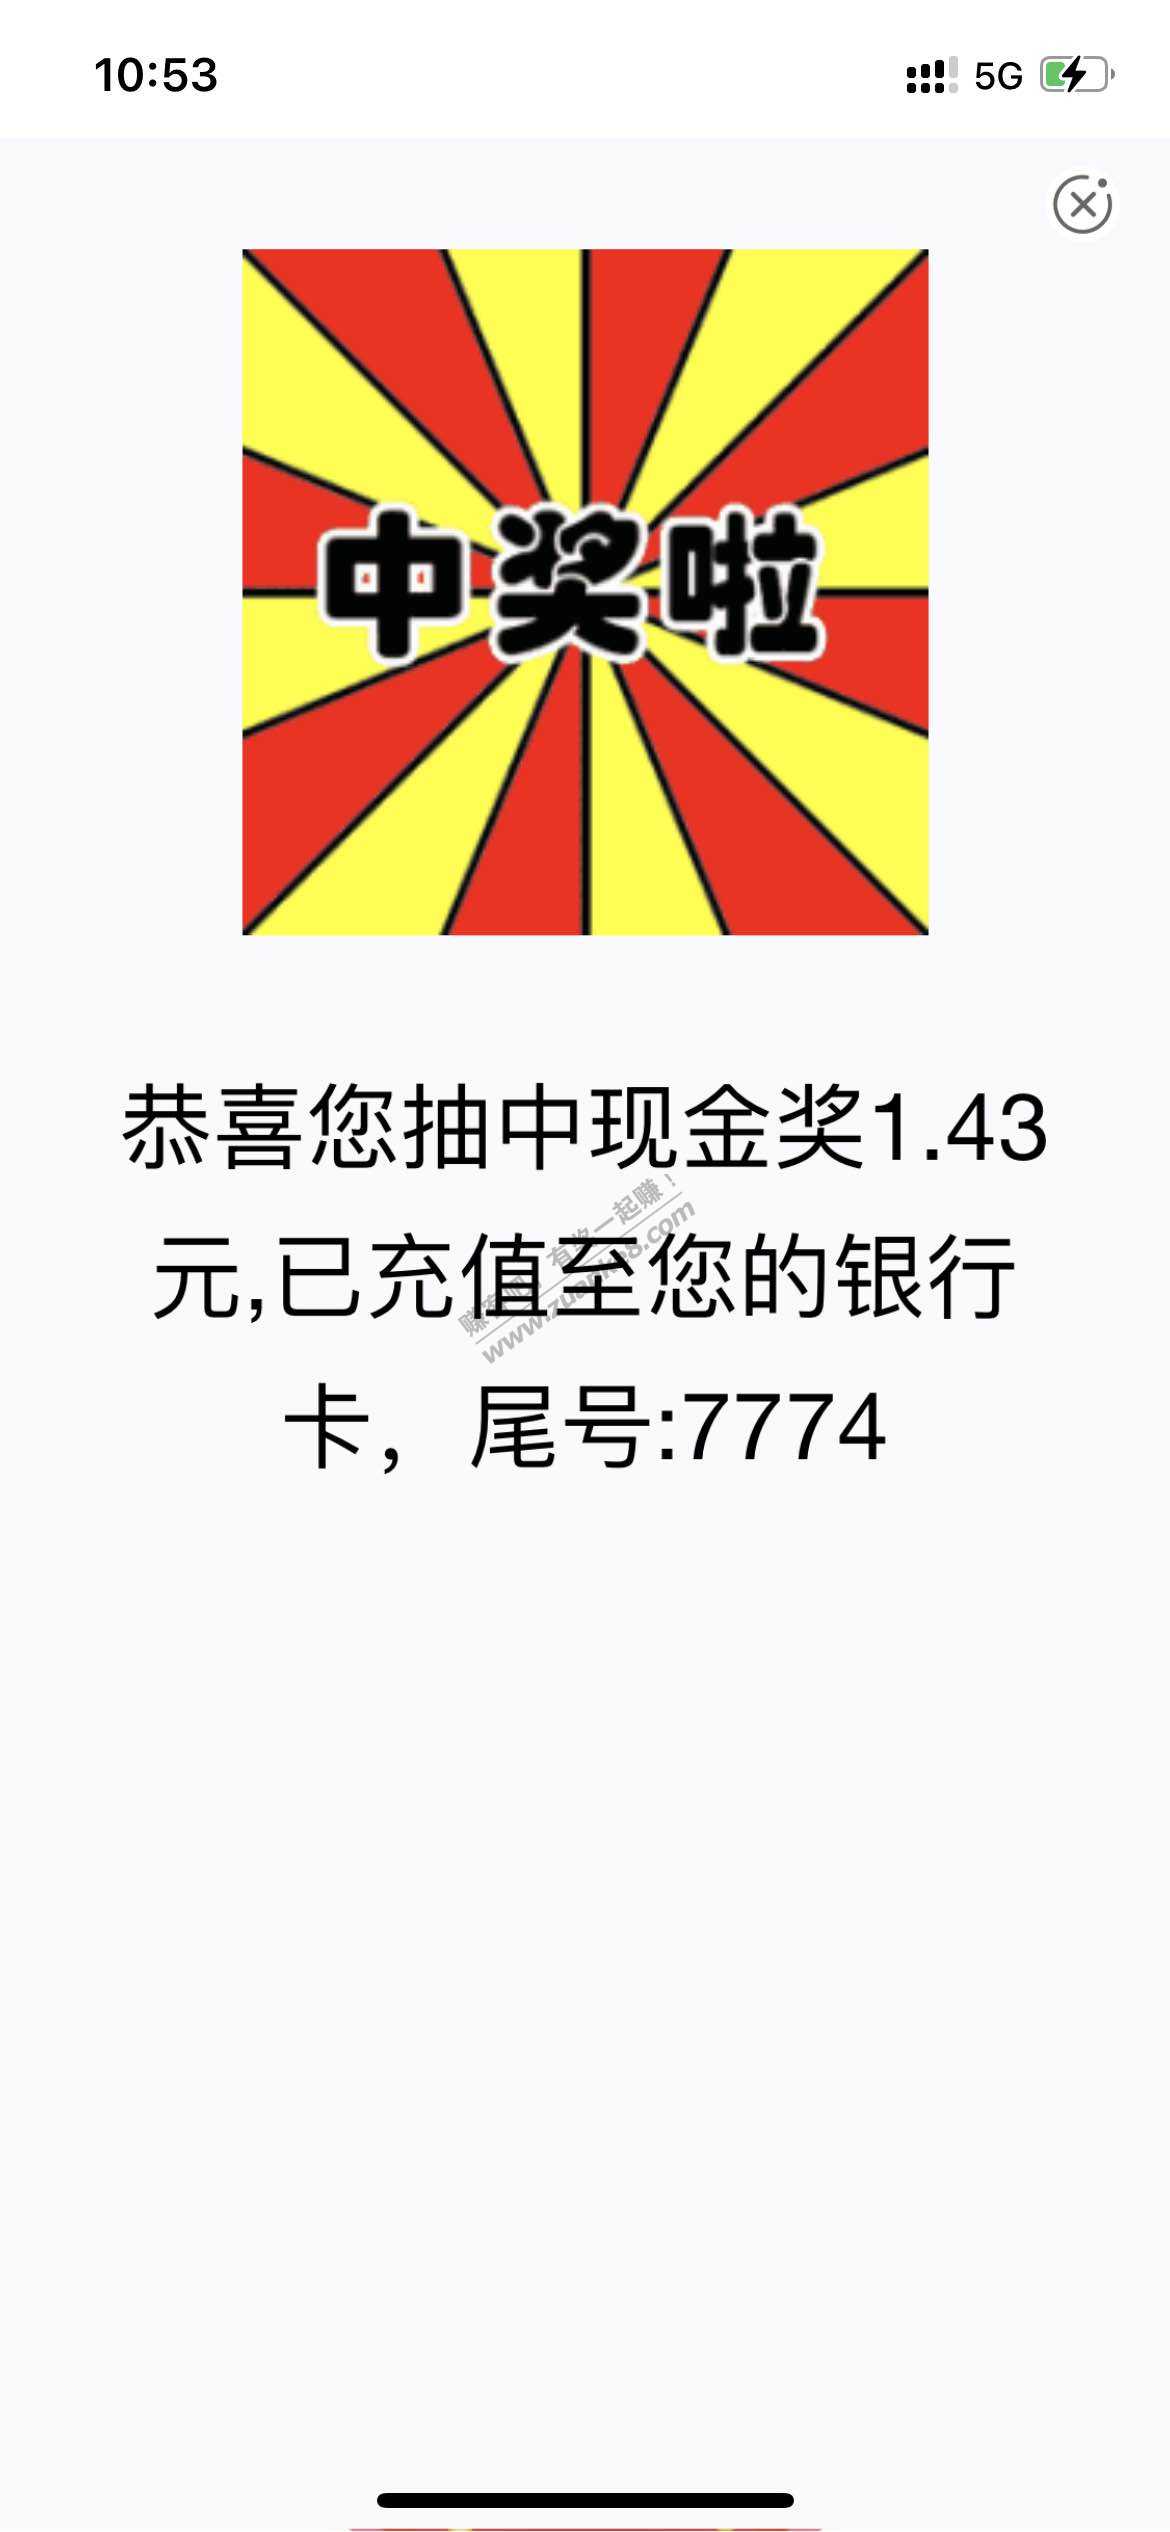 农业银行-江苏省；积分抽奖；中了1.43